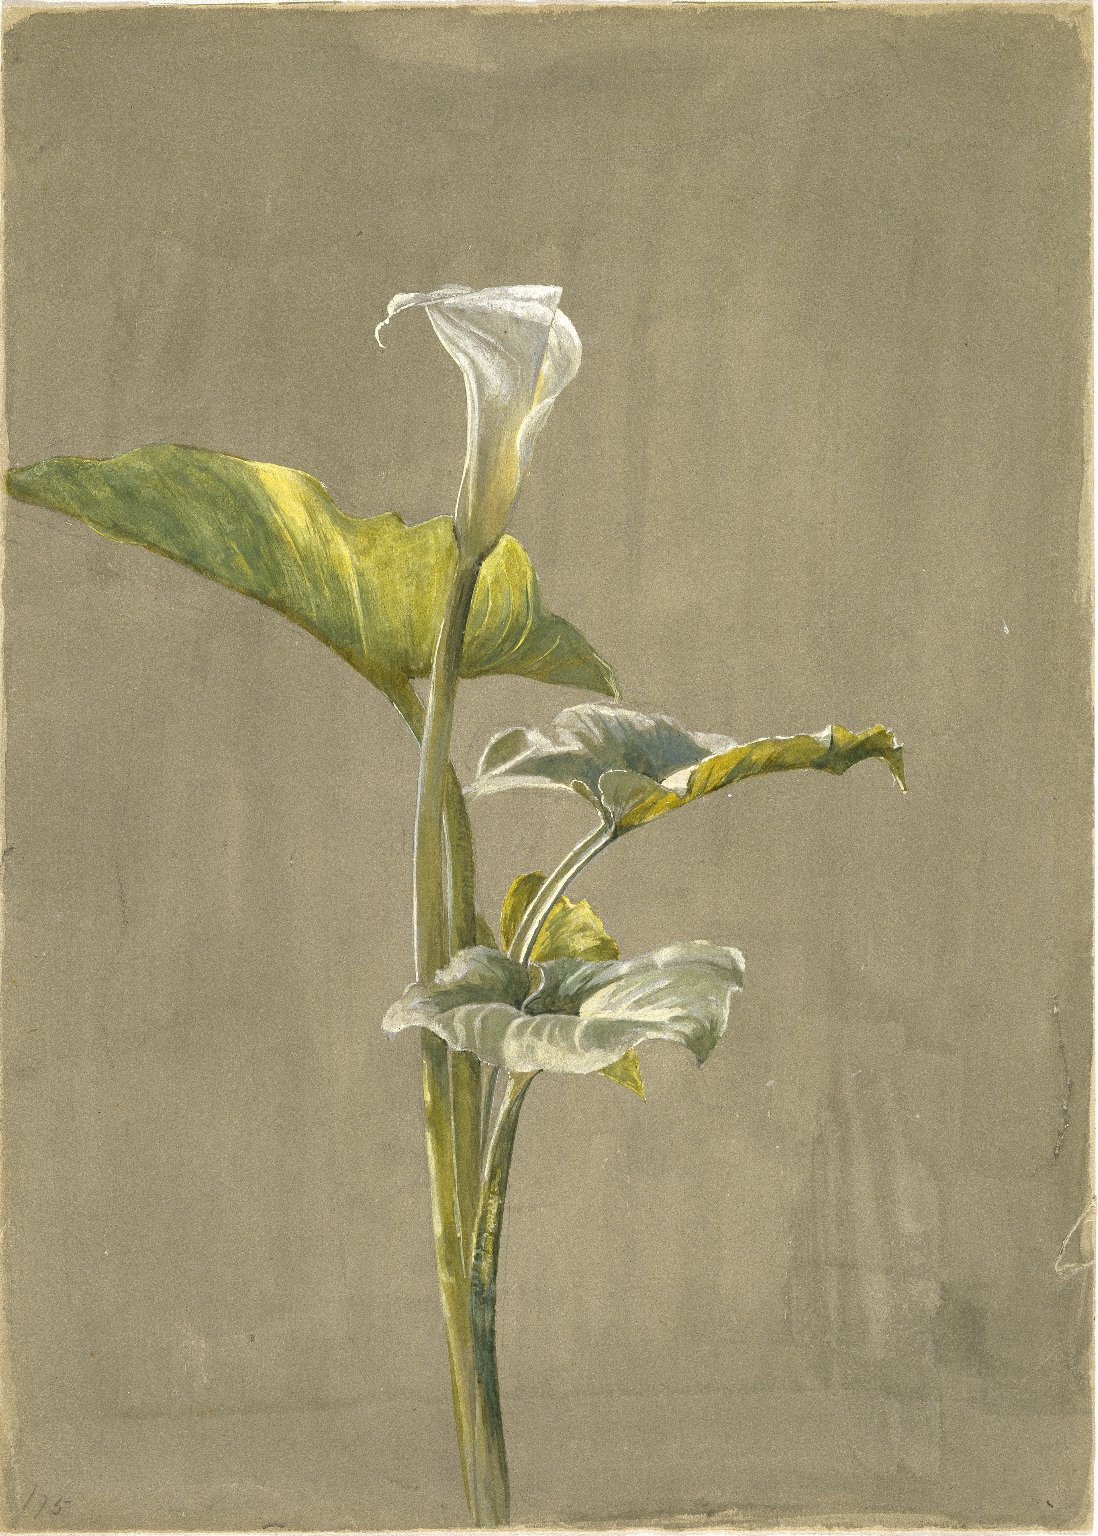 Calla Lily by Fidelia Bridges - 1875 - 35.6 x 24.5 cm Brooklyn Museum